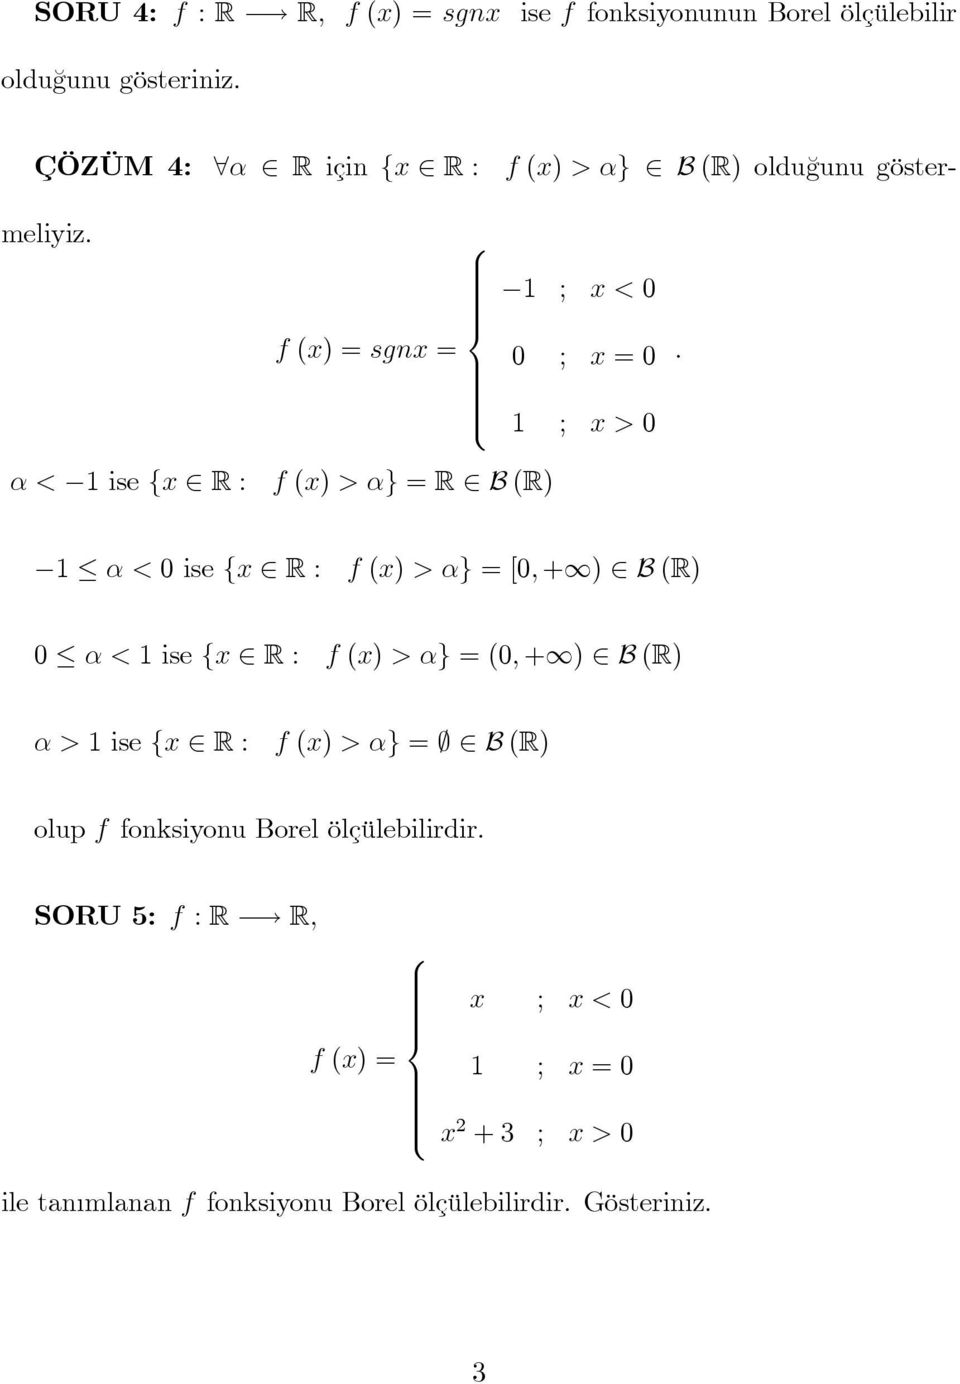 α < 1 ise {x R : f (x) > α} = R B (R) 1 α < 0 ise {x R : f (x) > α} = [0, + ) B (R) 0 α < 1 ise {x R : f (x) > α} = (0, + ) B (R) α